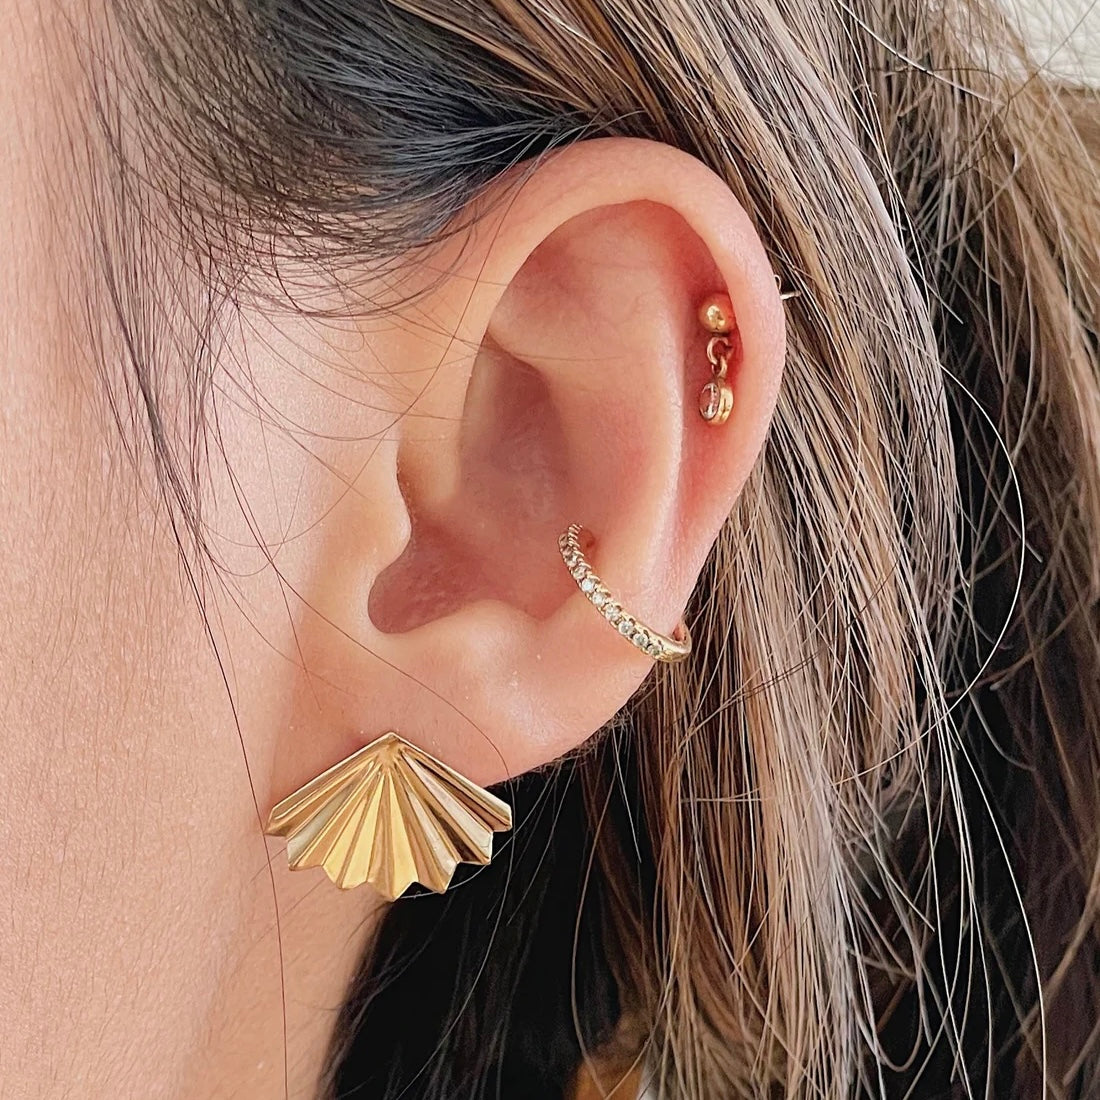 Fan earrings